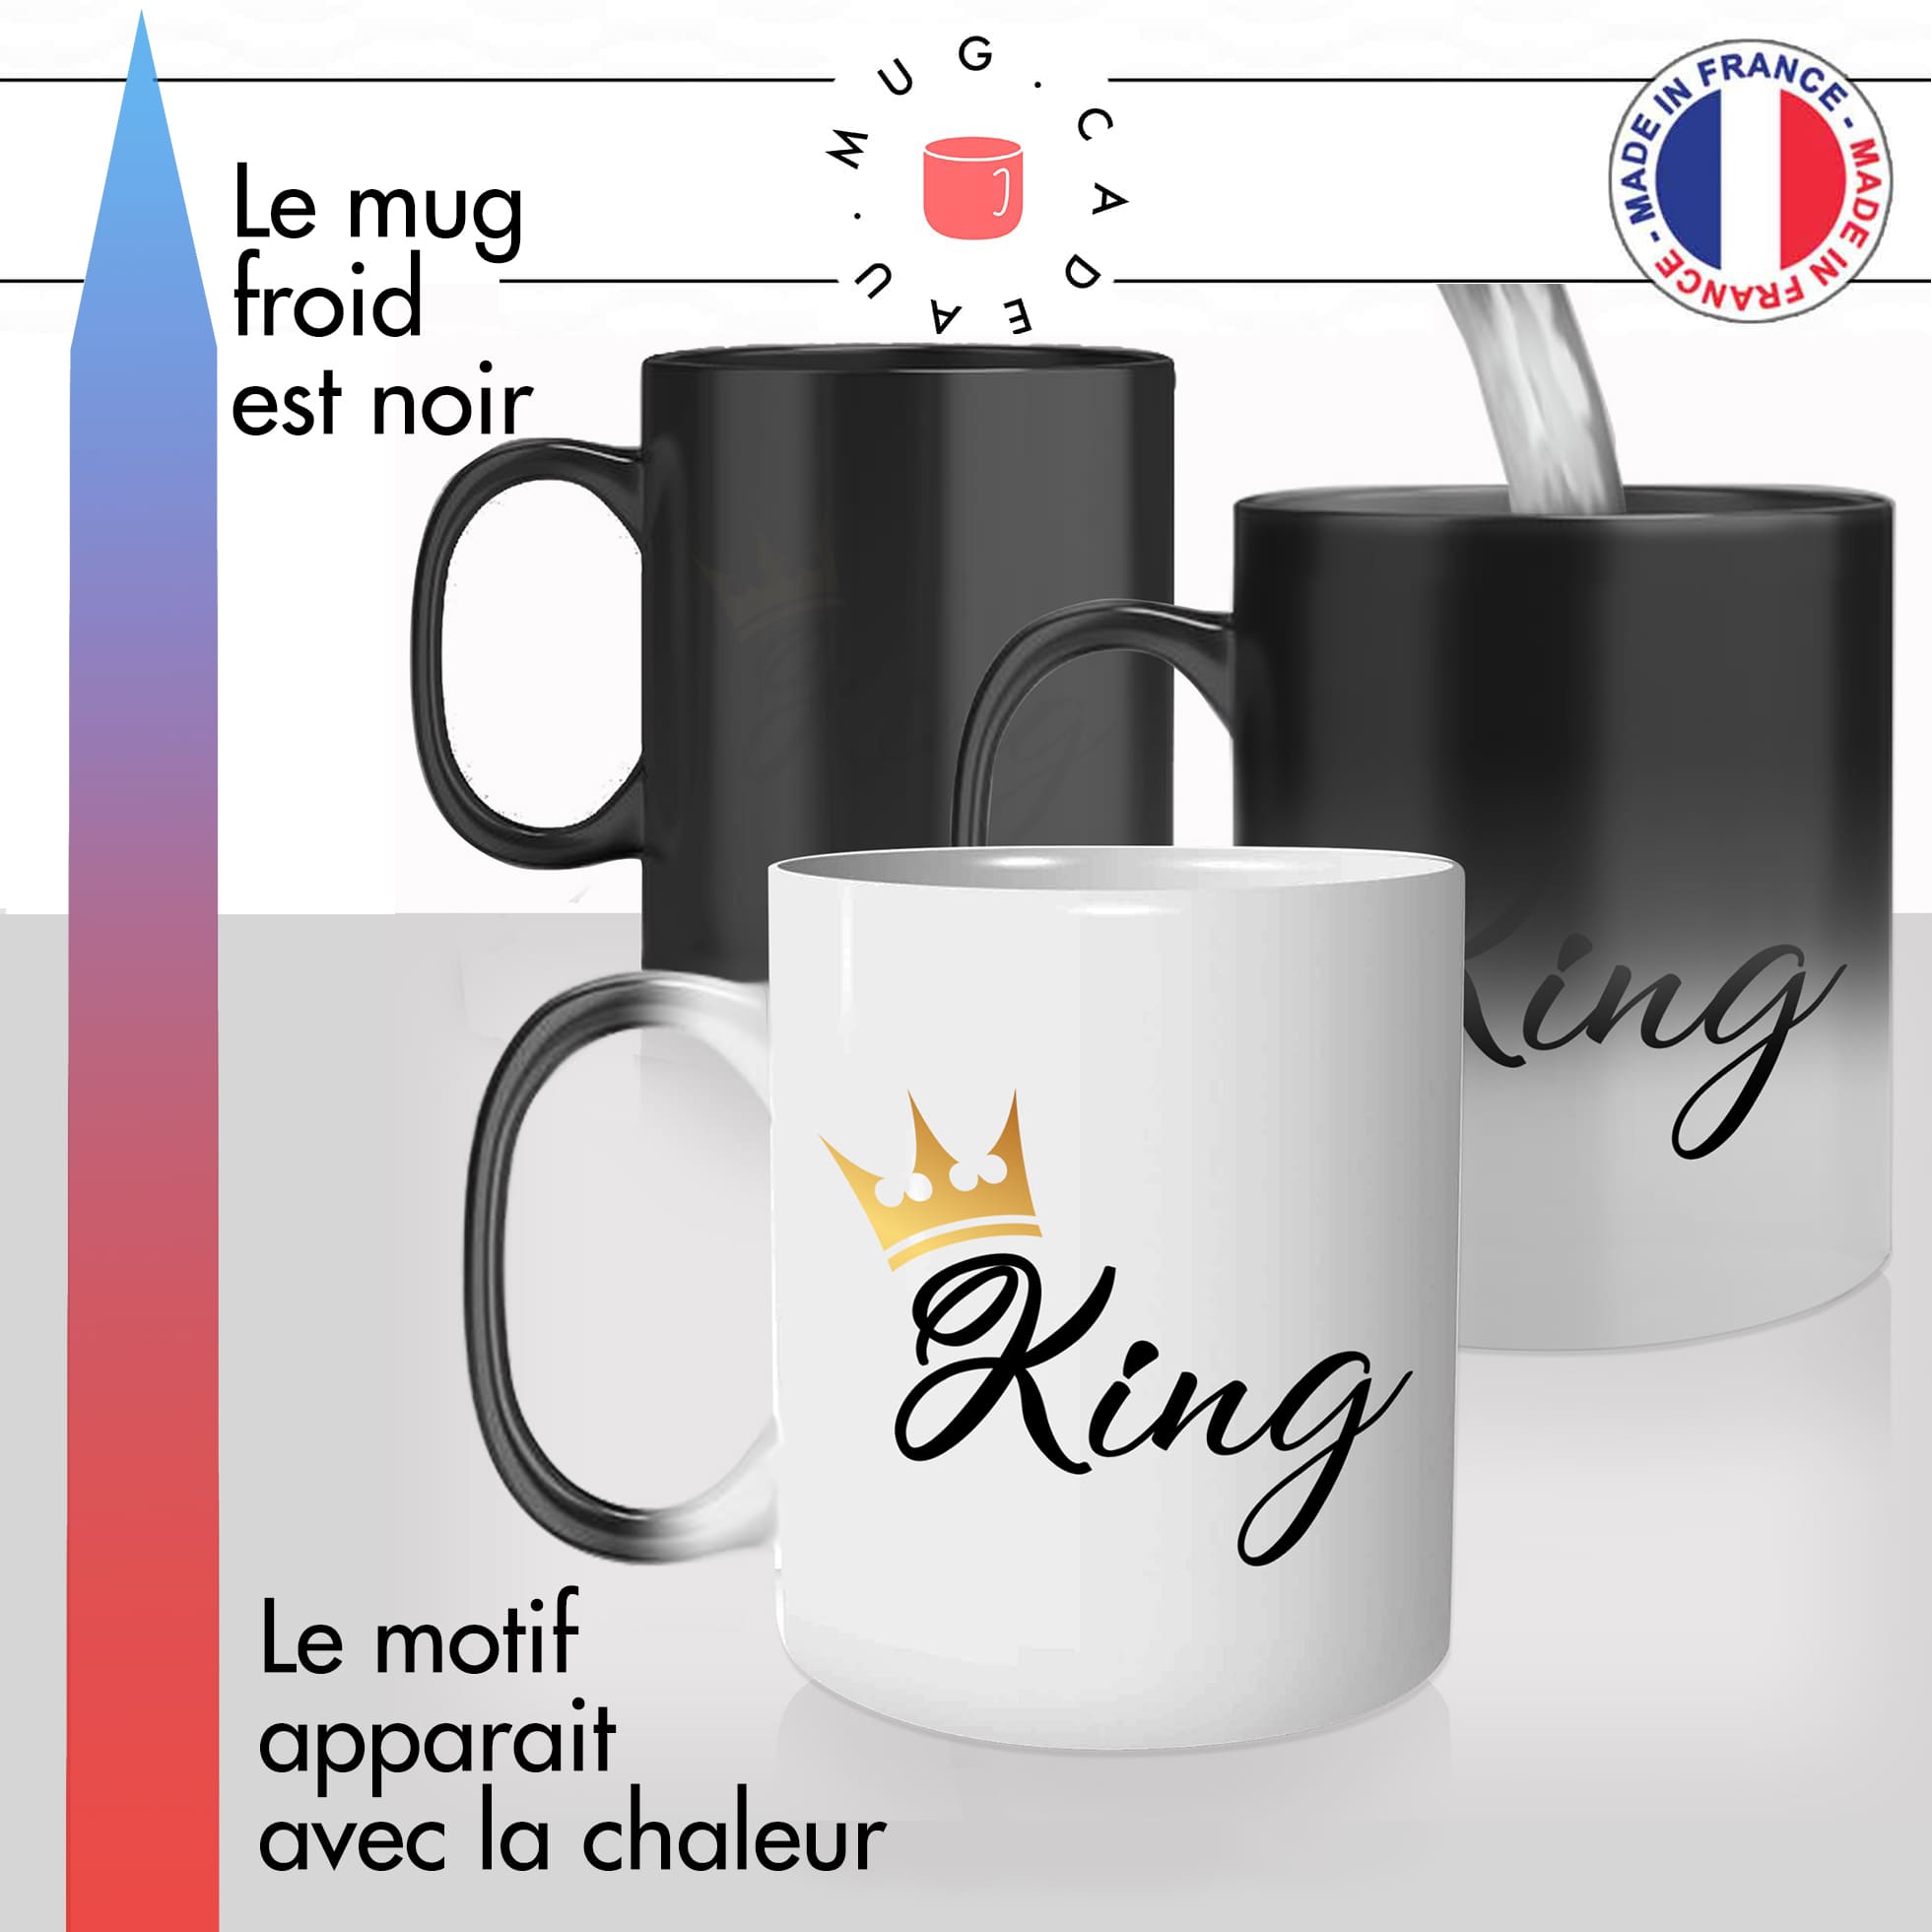 mug magique thermoreactif thermochauffant personnalisé king roi homme couple prince couronne idée cadeau fun